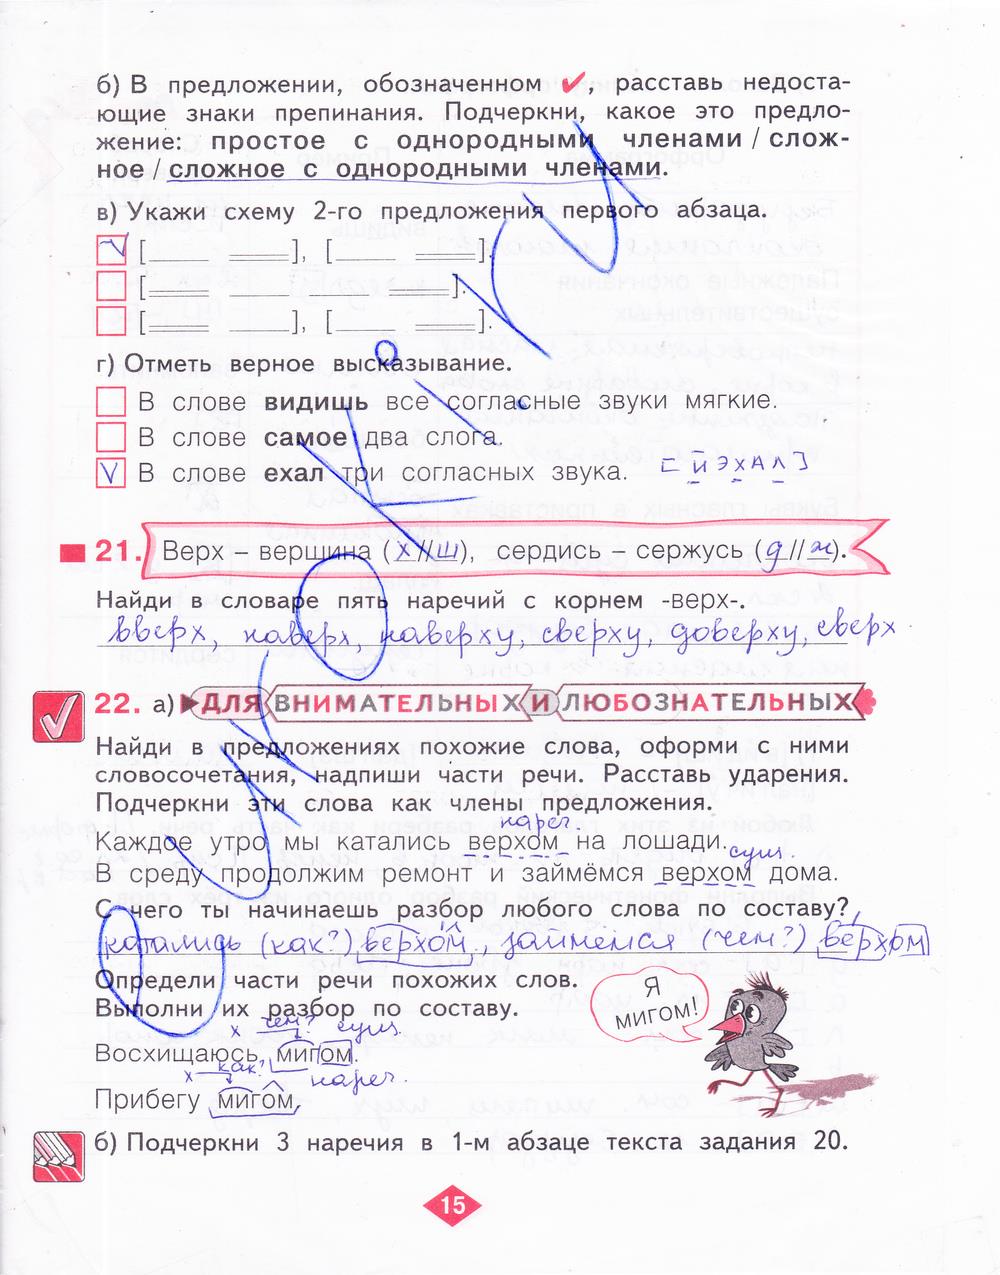 гдз 4 класс рабочая тетрадь часть 4 страница 15 русский язык Нечаева, Воскресенская